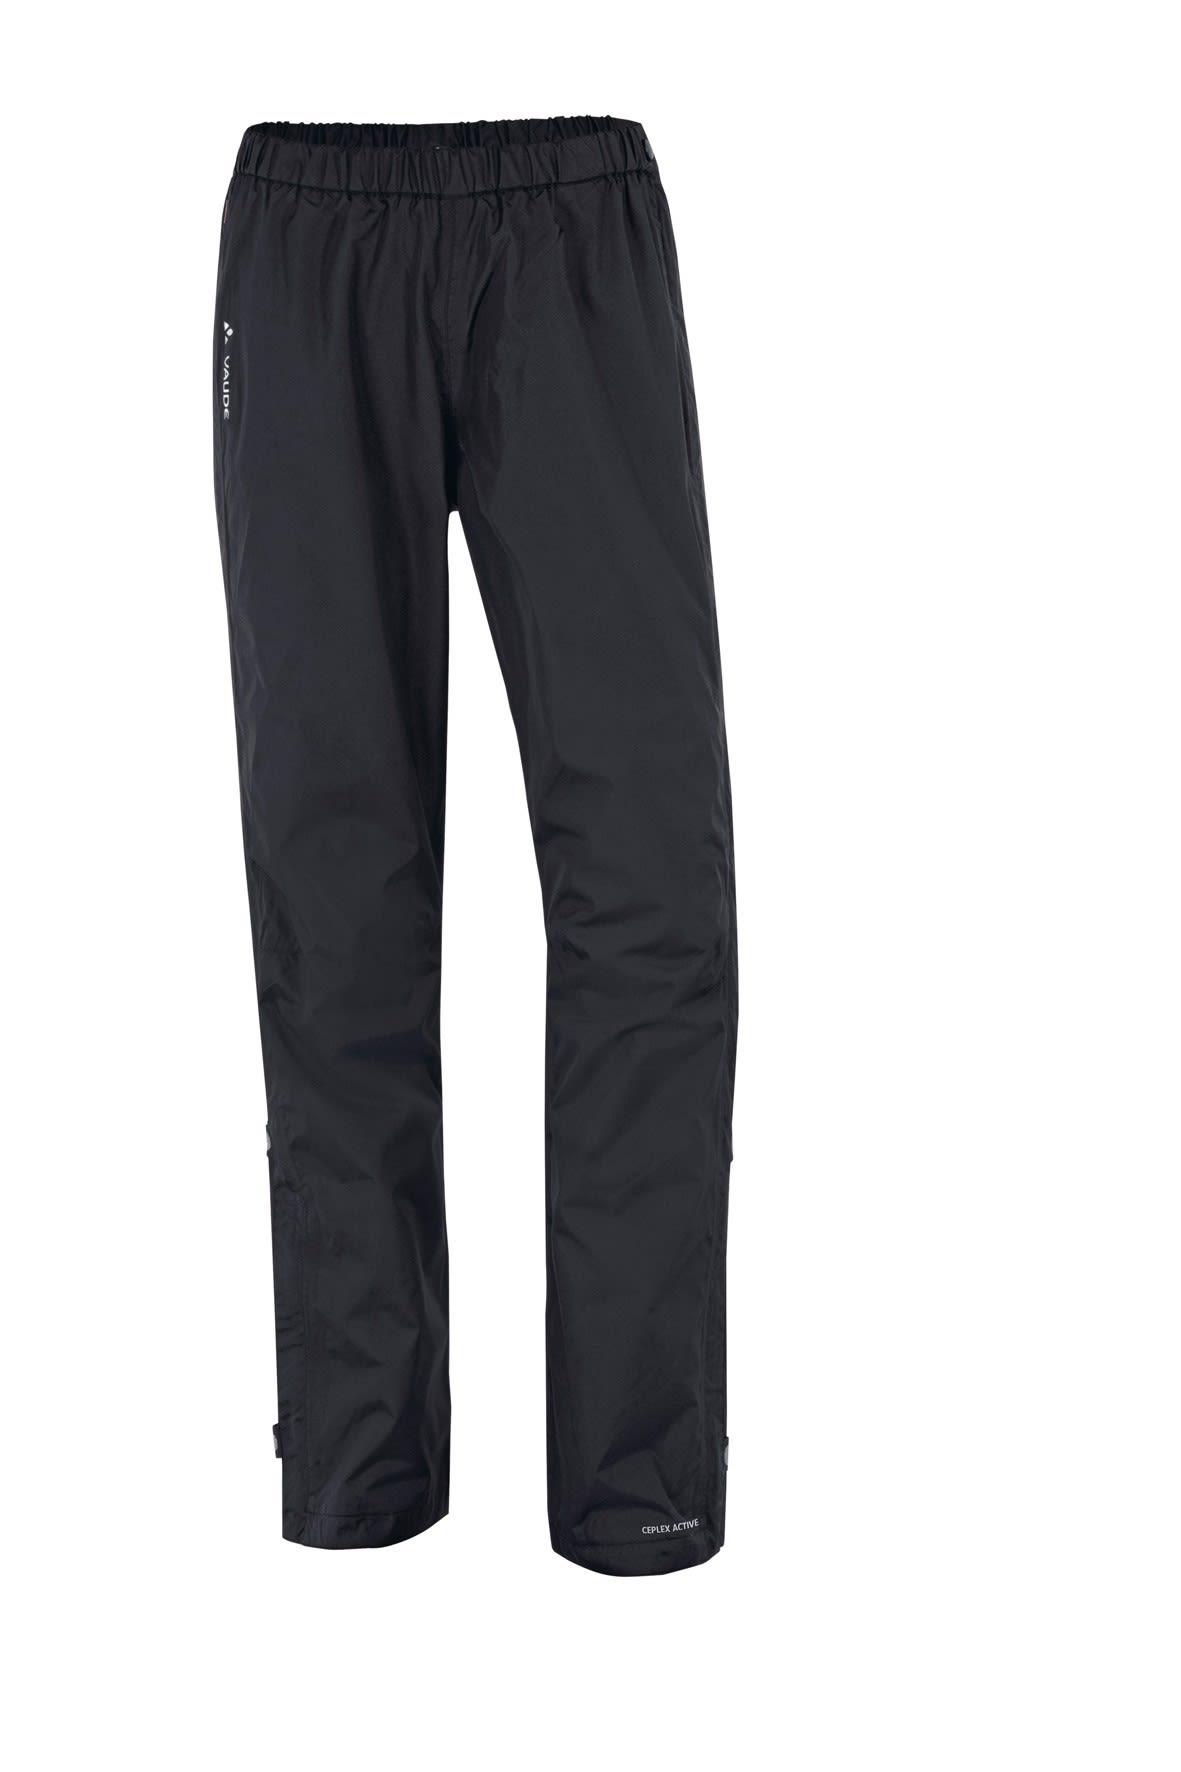 Vaude Fluid Full-Zip Pants Schwarz- Female Hosen- Grsse 38 - Short - Farbe Black